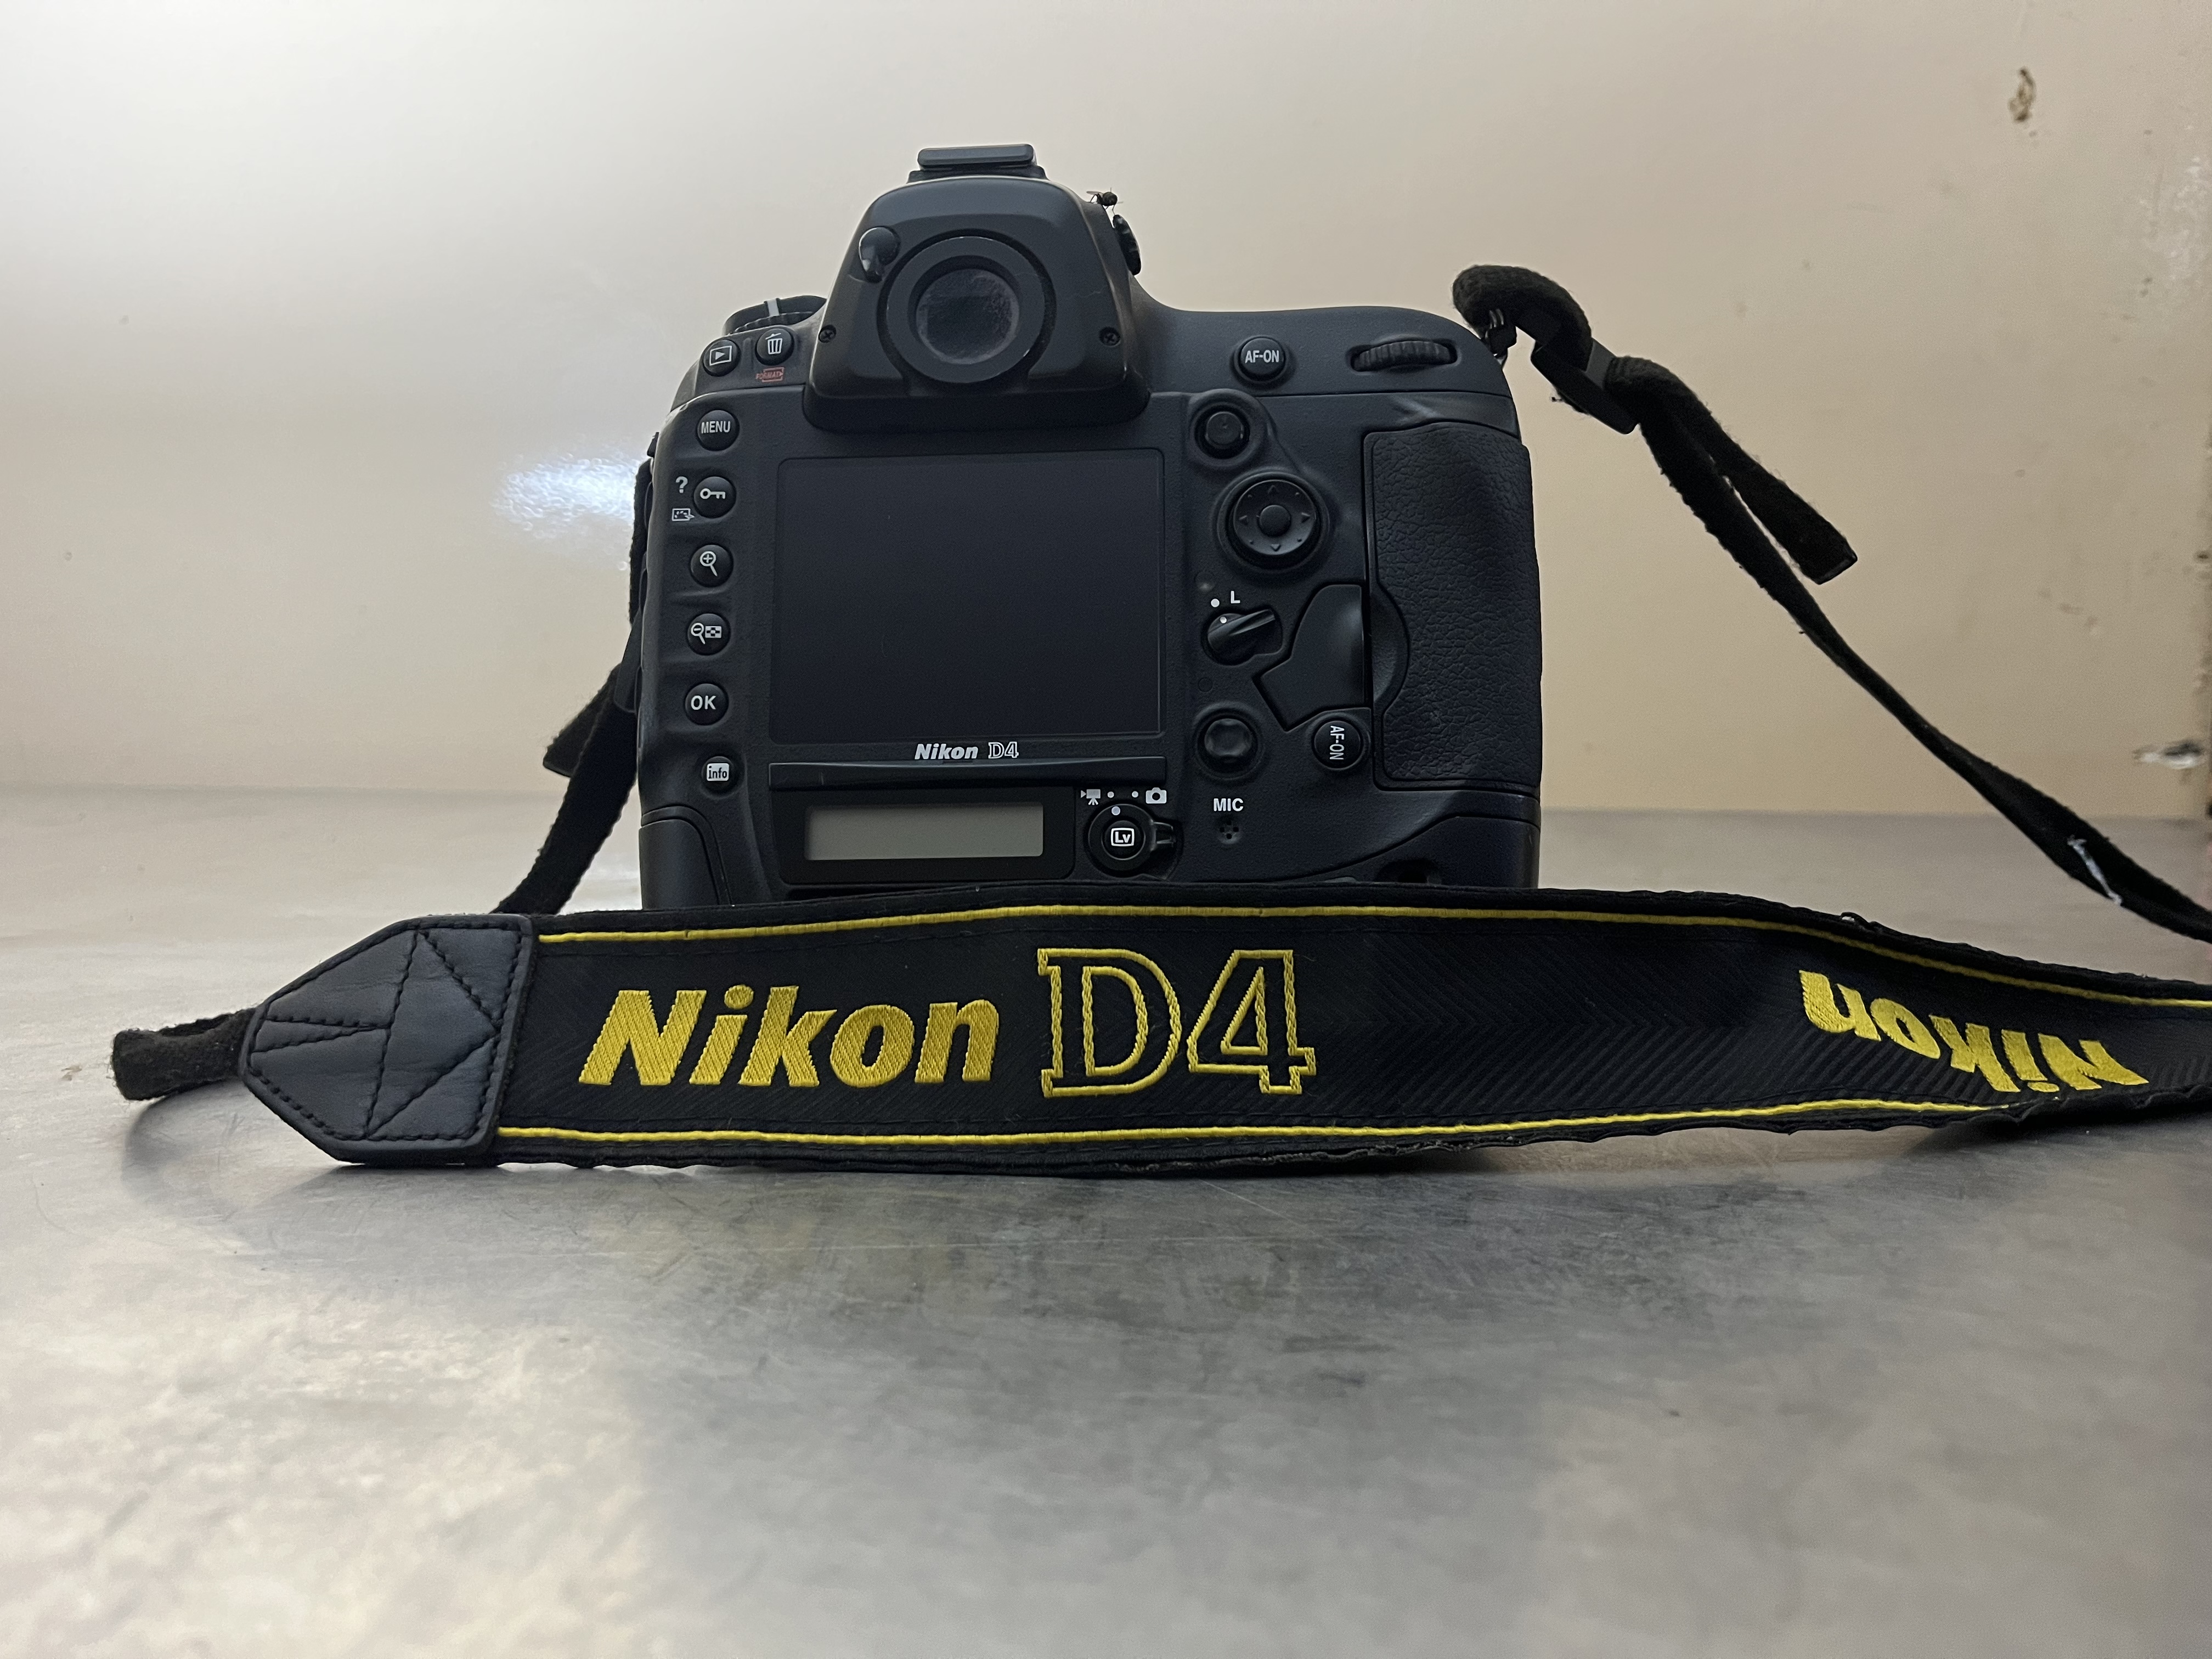 Nikon D4 Je vends un super nikon D4 dans sa boîte avec tous les accessoires. L’appareil vient de France et est dans un état parfait.
Contactez moi au 778703460.